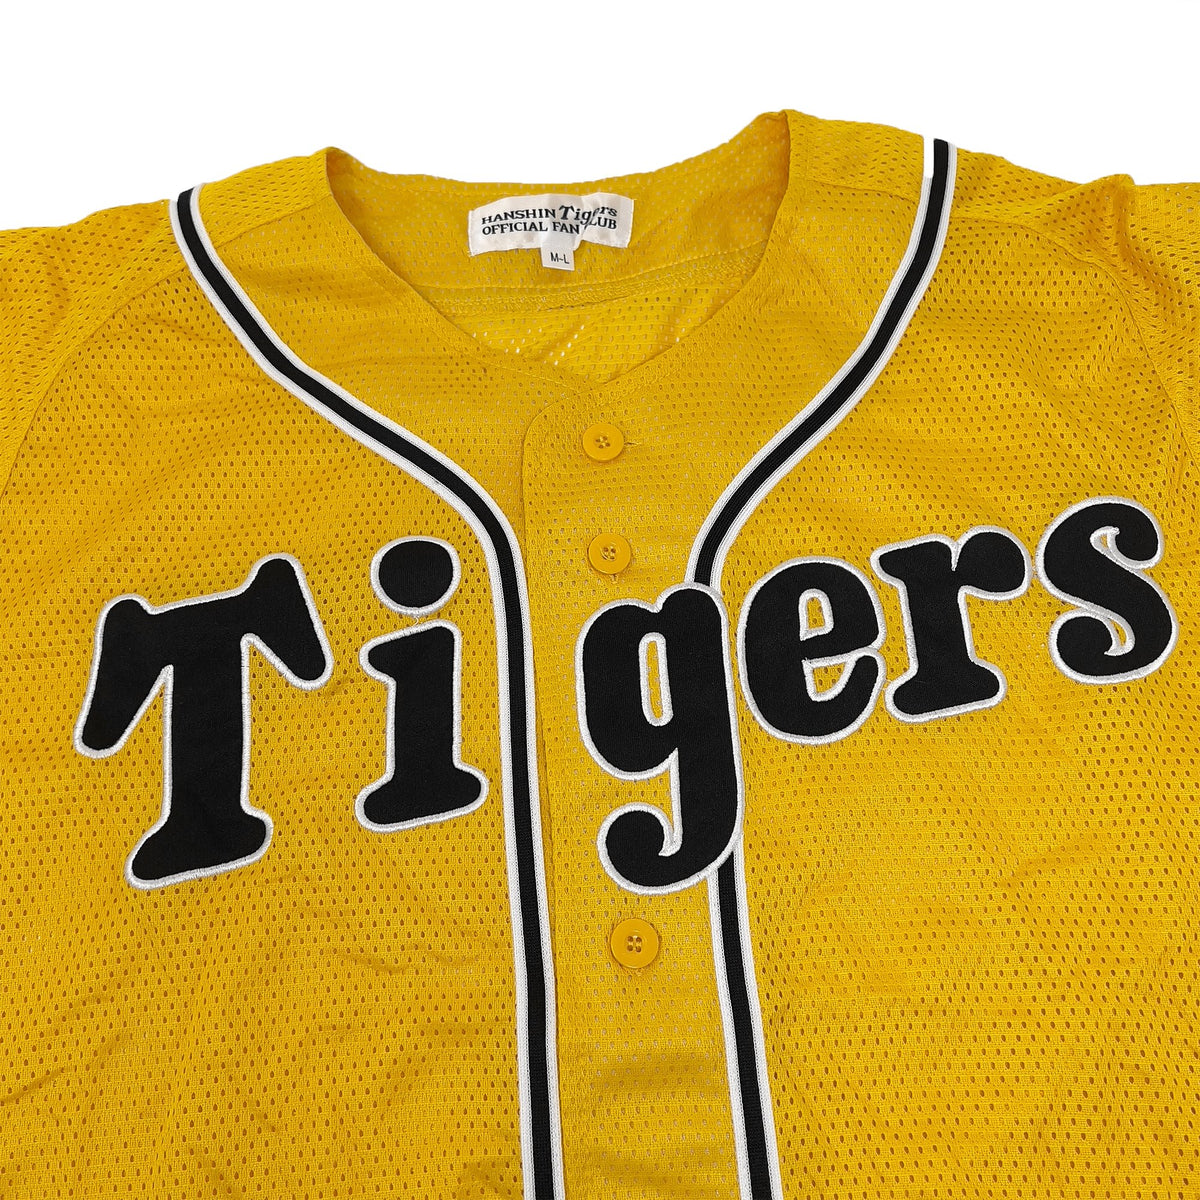 retro baseball jerseys cheap